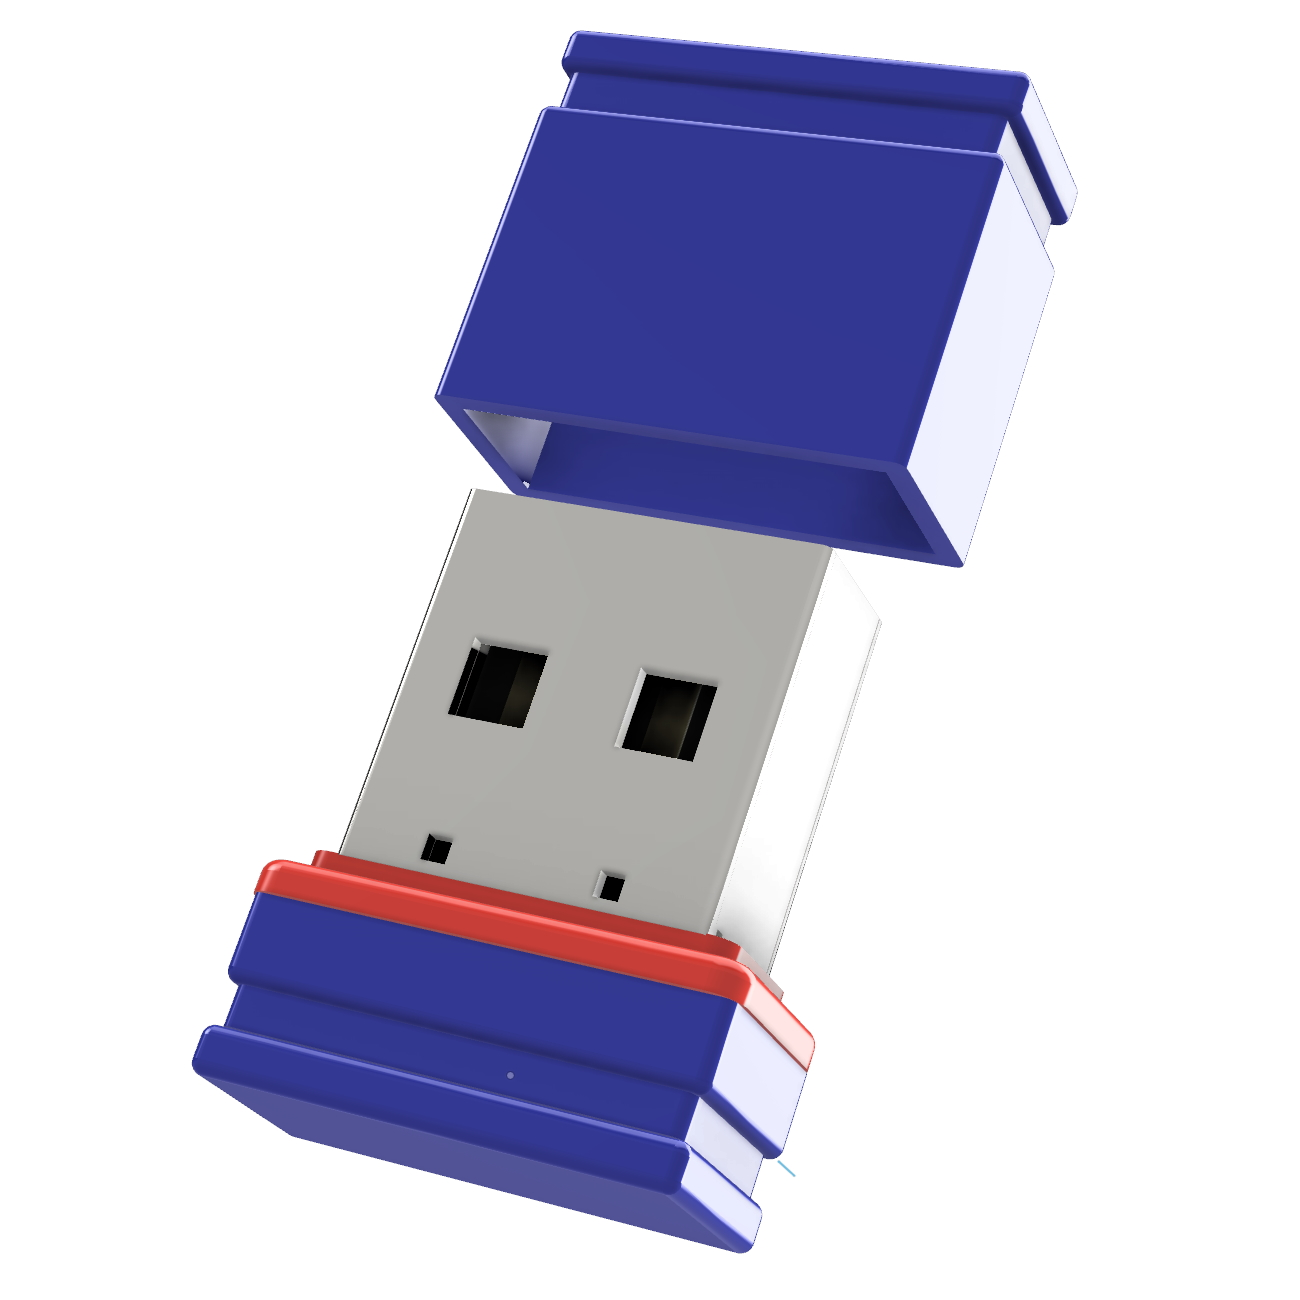 GERMANY 4 USB-Stick USB GB) (Blau/Rot, Mini P1 ®ULTRA